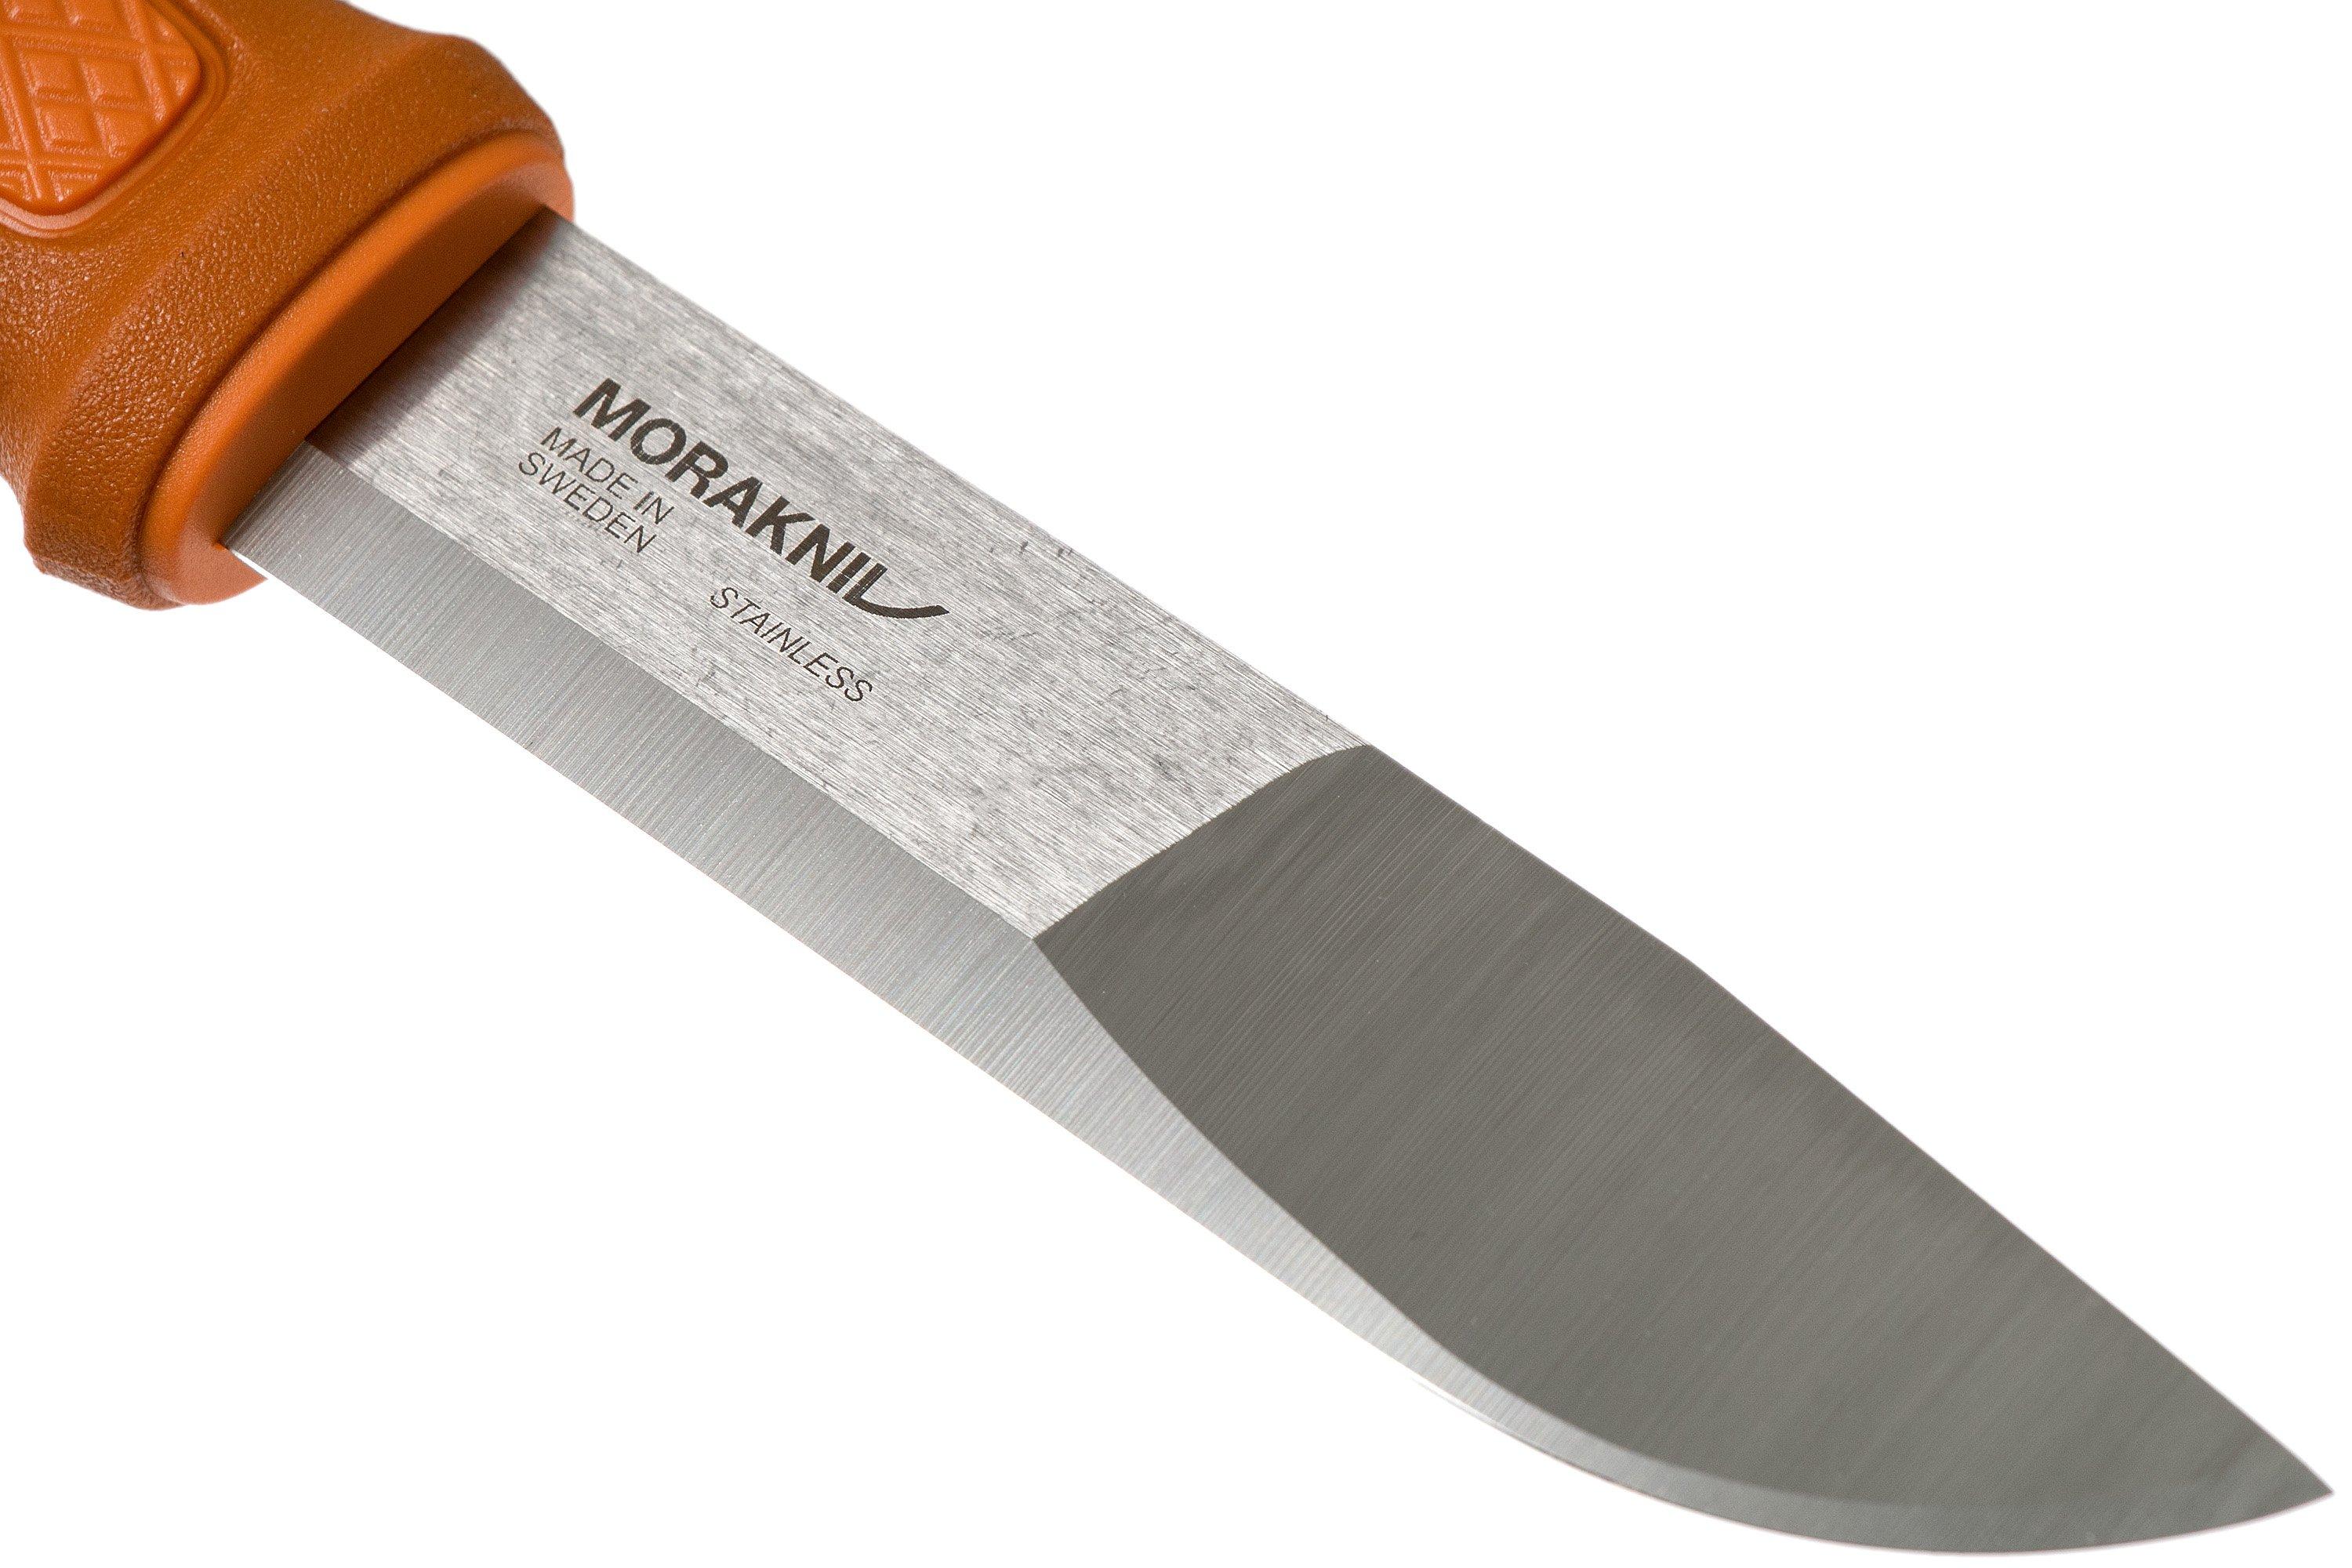 Morakniv Kansbol knife, muovituppi, burnt orange 13505